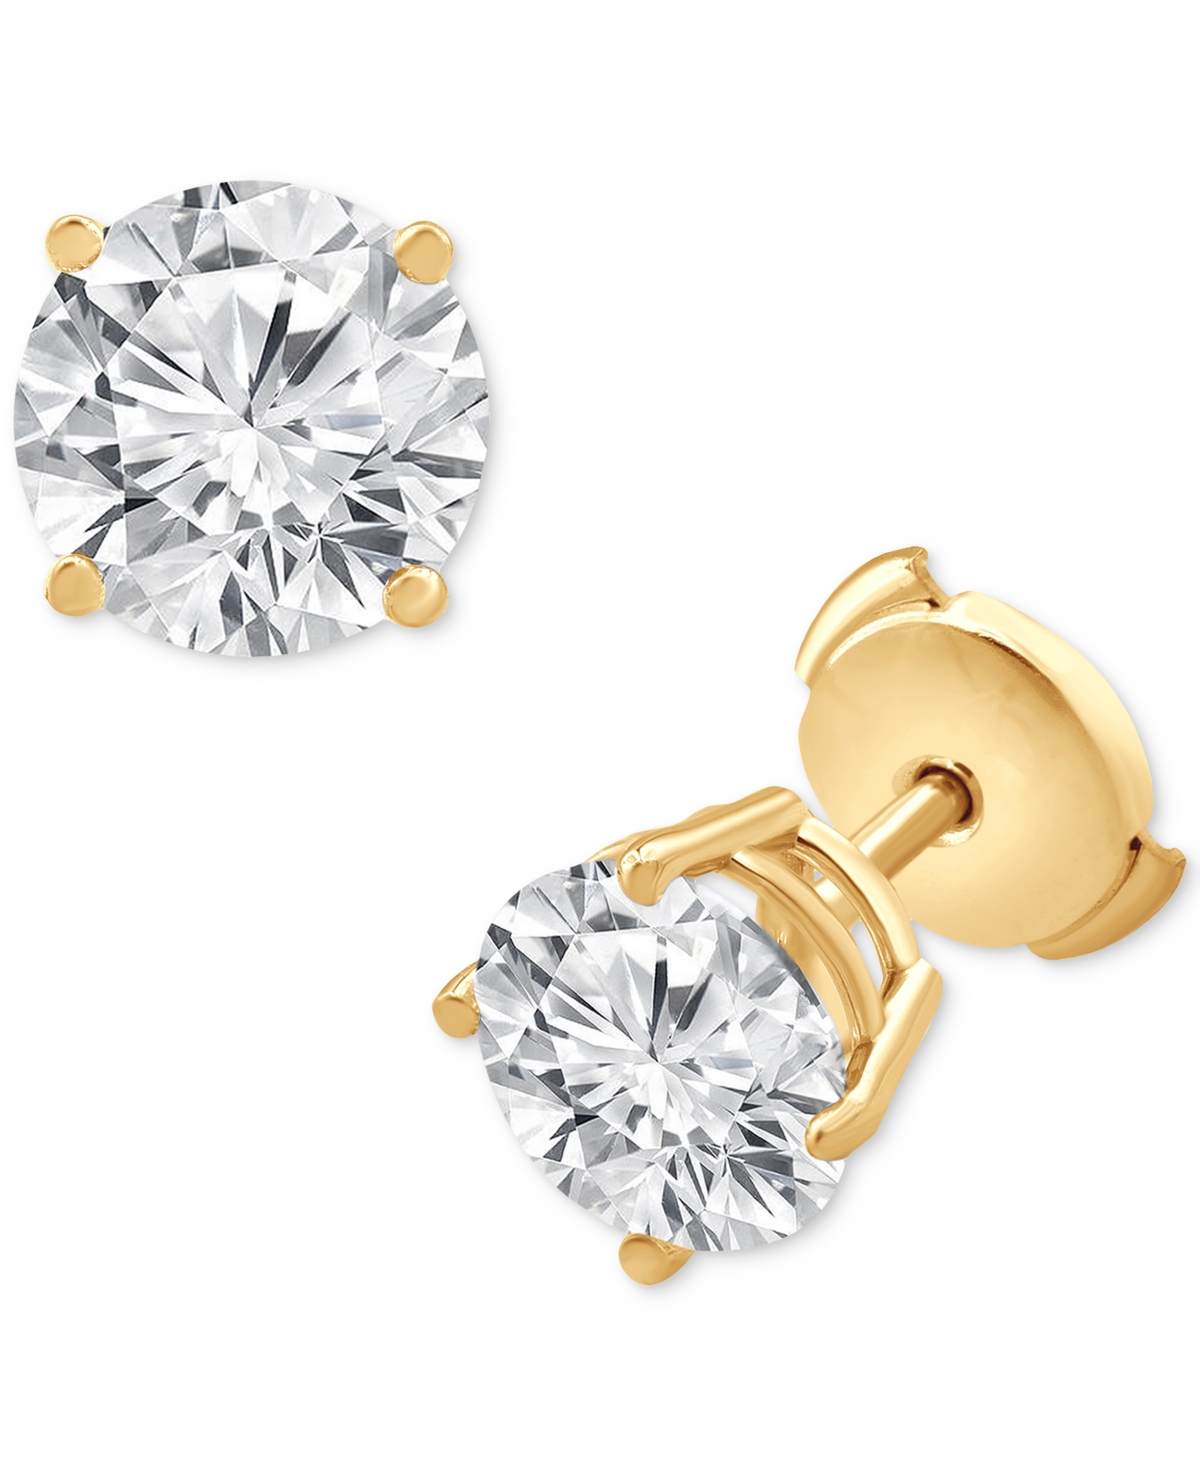 Certified Lab Grown Diamond Stud Earrings (4 ct. t.w.) in 14k Gold - White Gold